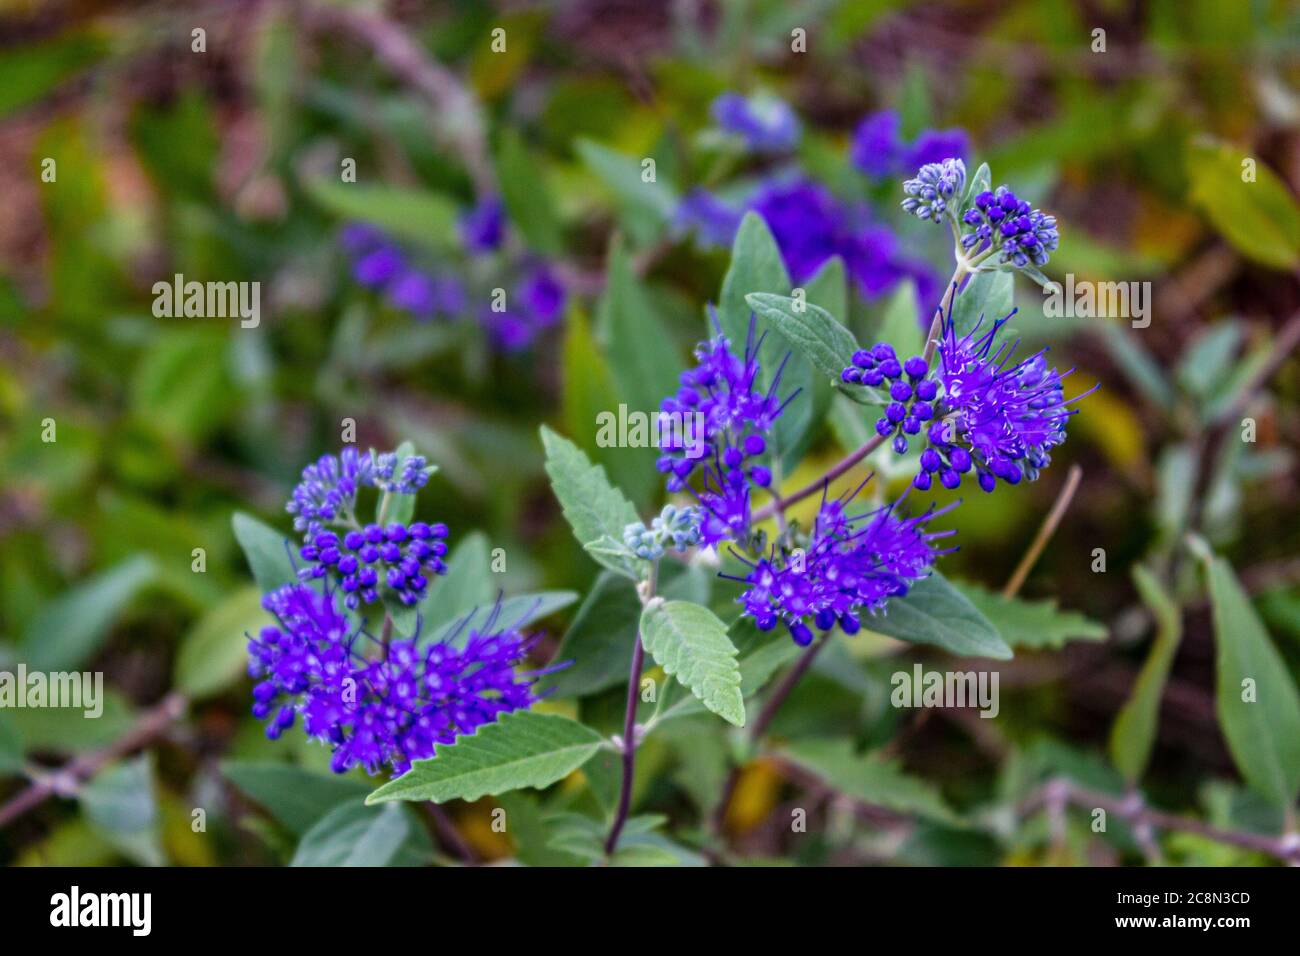 Fiore viola con foglie verdi. Phacelia tanacetifolia è una specie di phacelia conosciuta con i nomi comuni Lacy phacelia, tansy blu o tansy viola. B Foto Stock